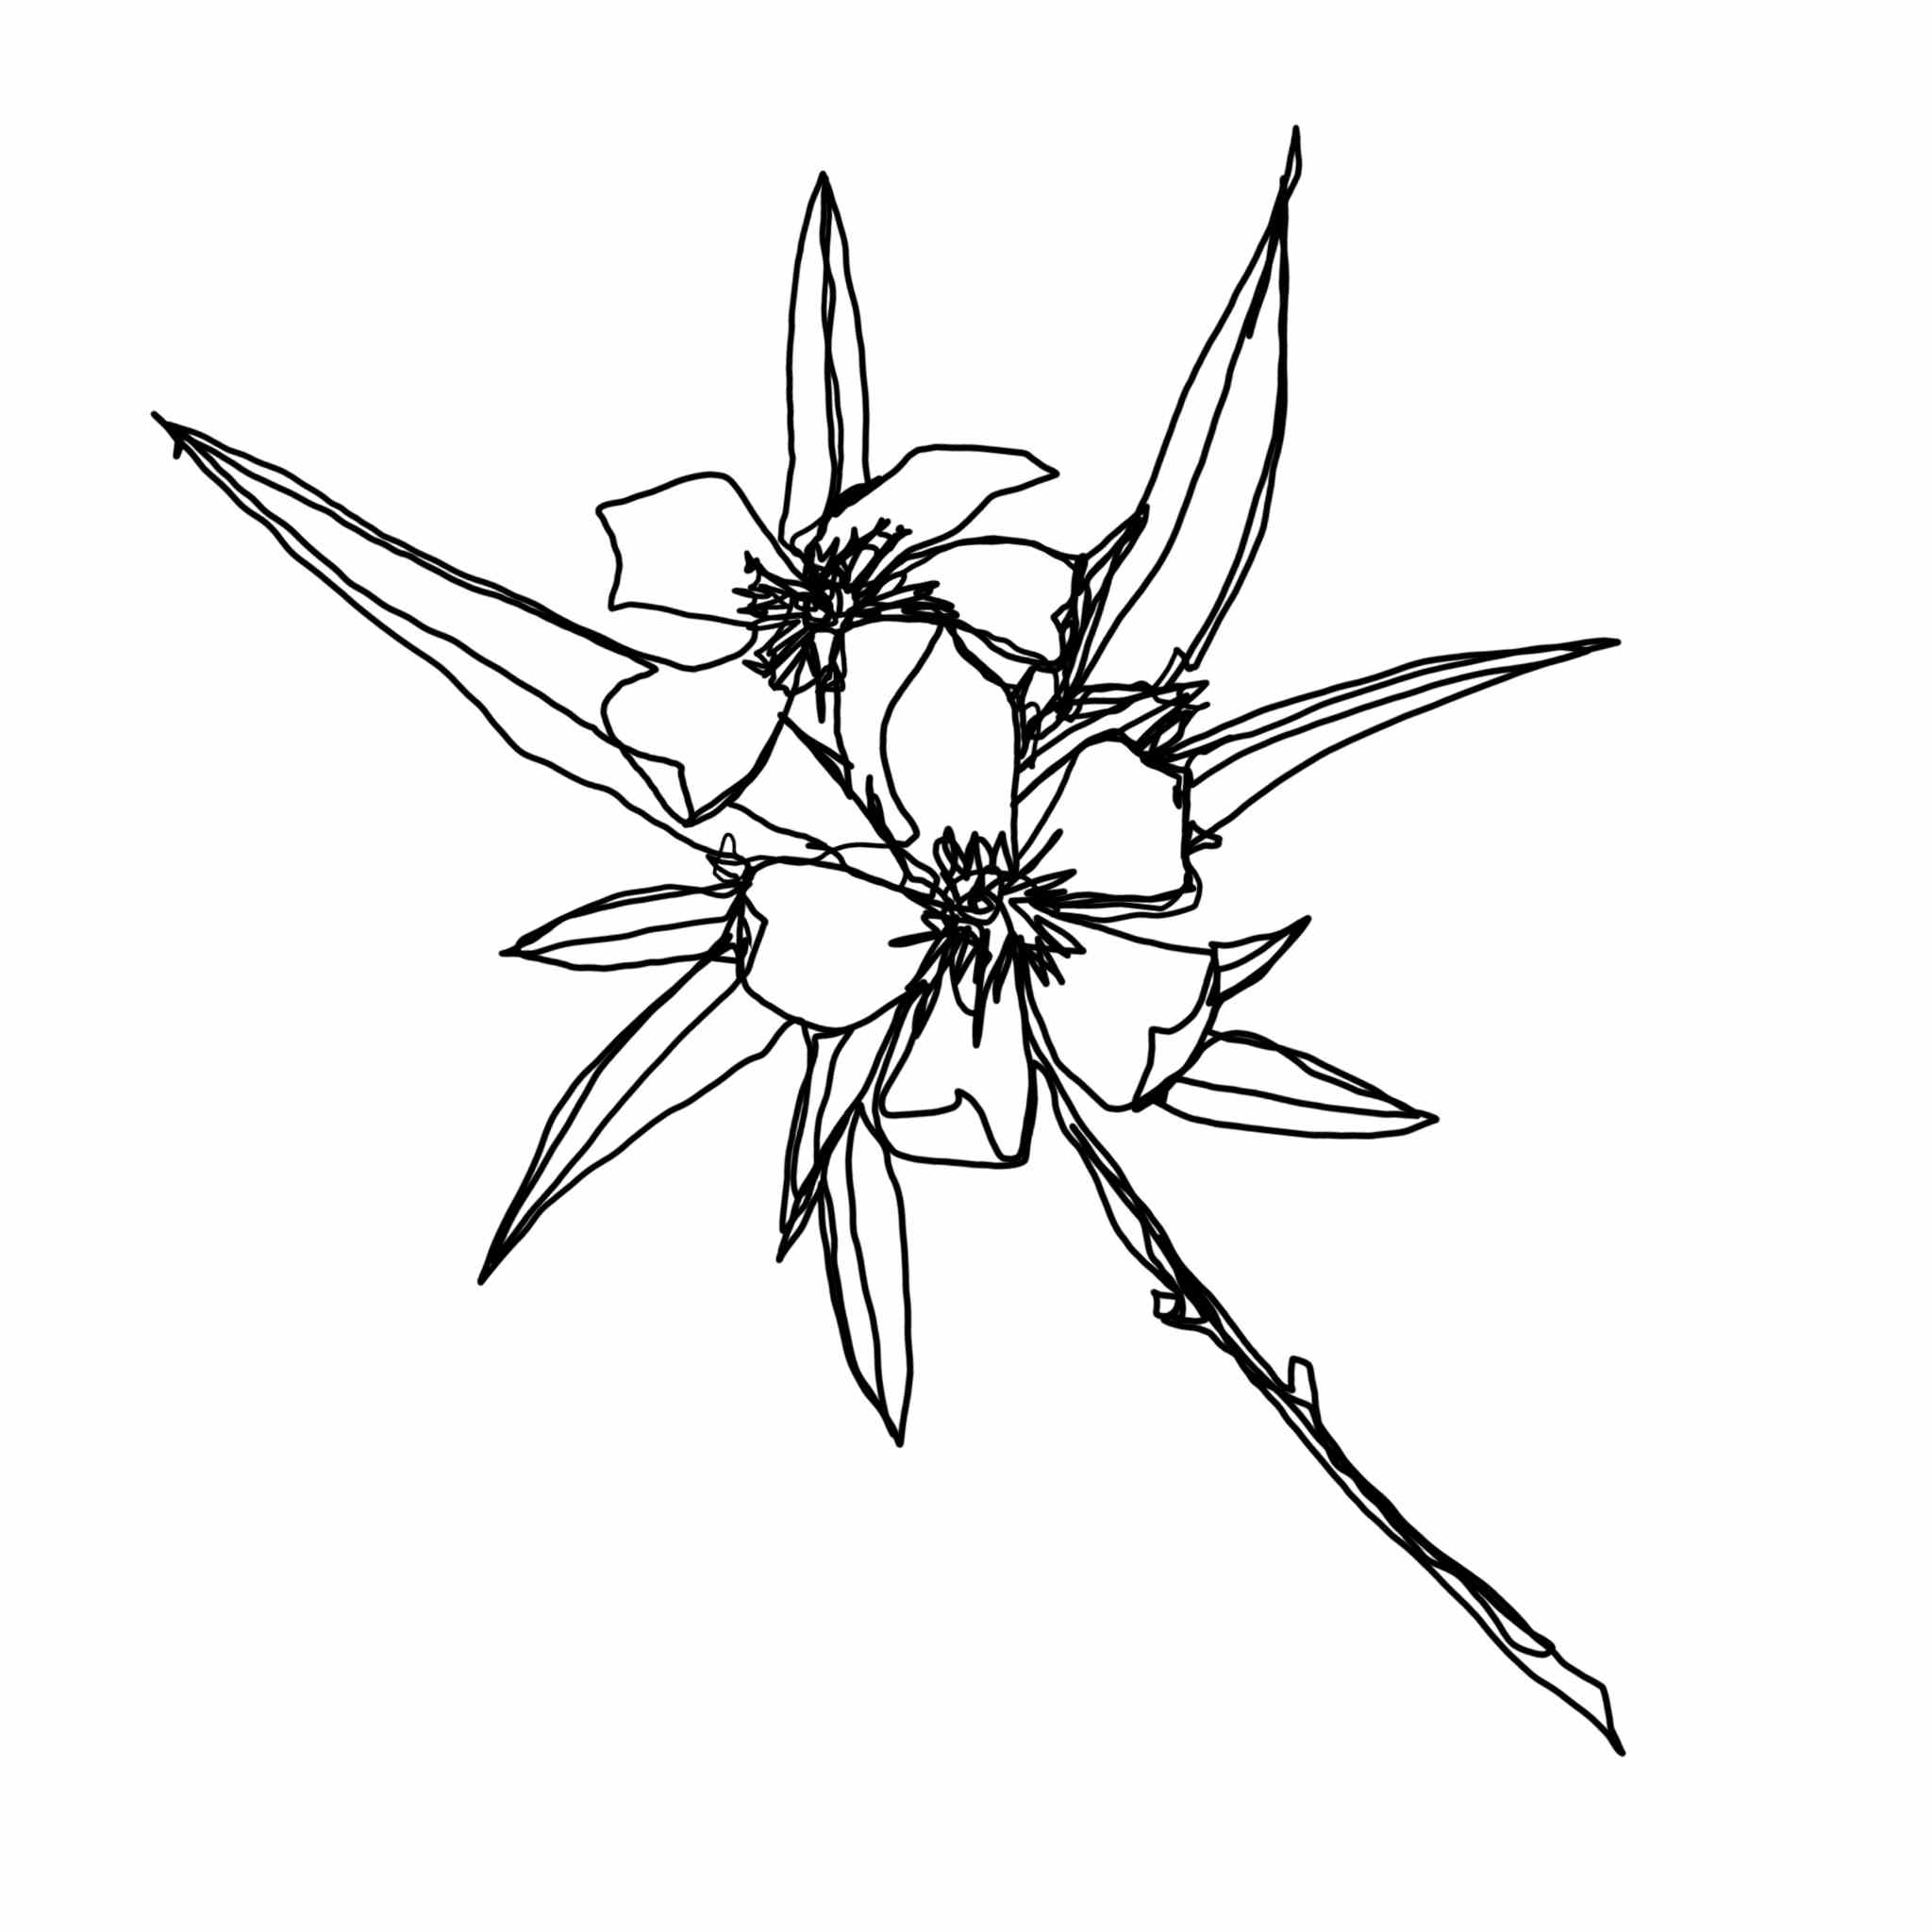 Nerium Oleander